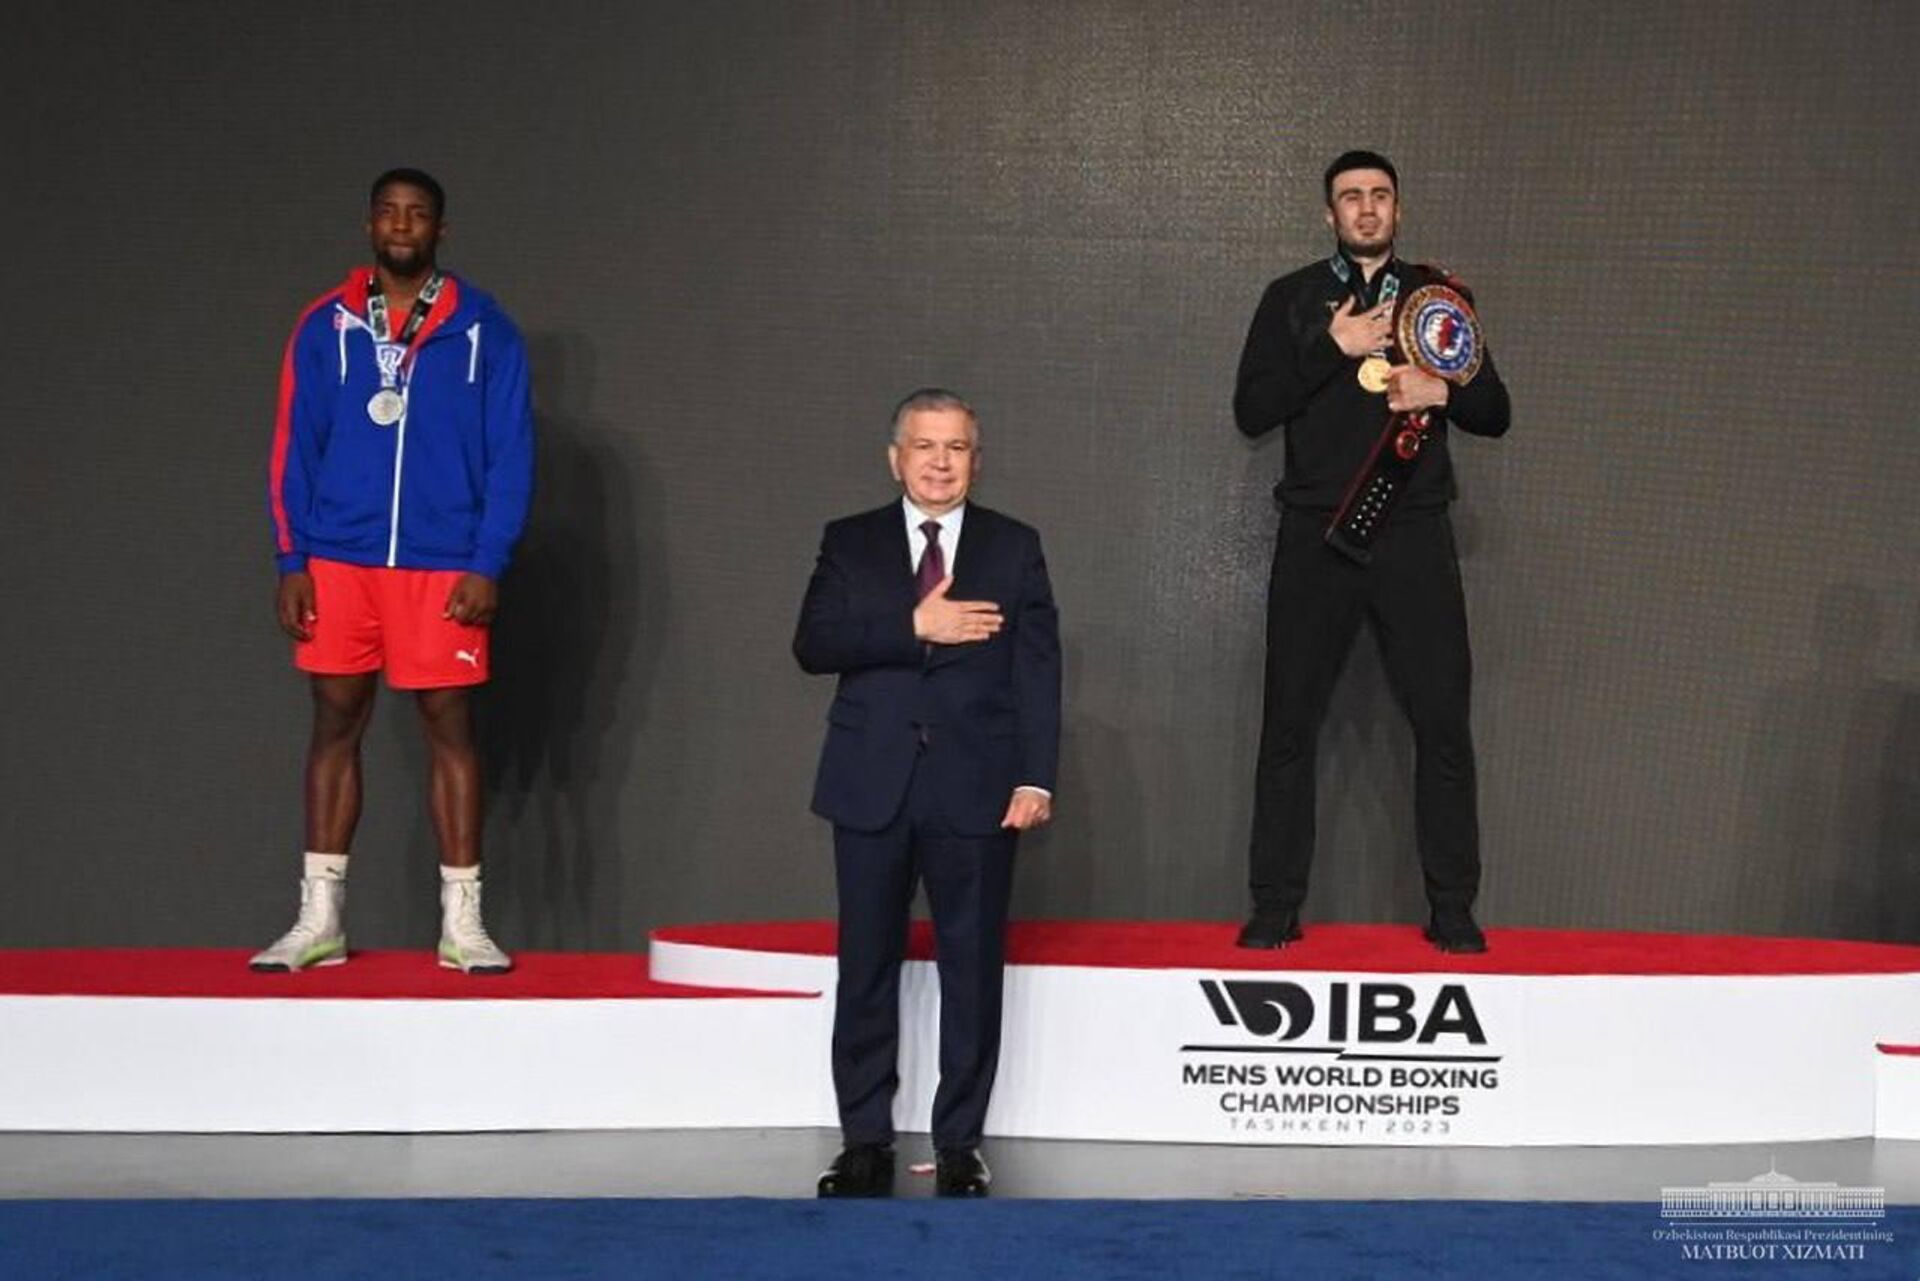 Shavkat Mirziyoyev posmotrel finalnie poyedinki chempionata mira po boksu - Sputnik O‘zbekiston, 1920, 14.05.2023